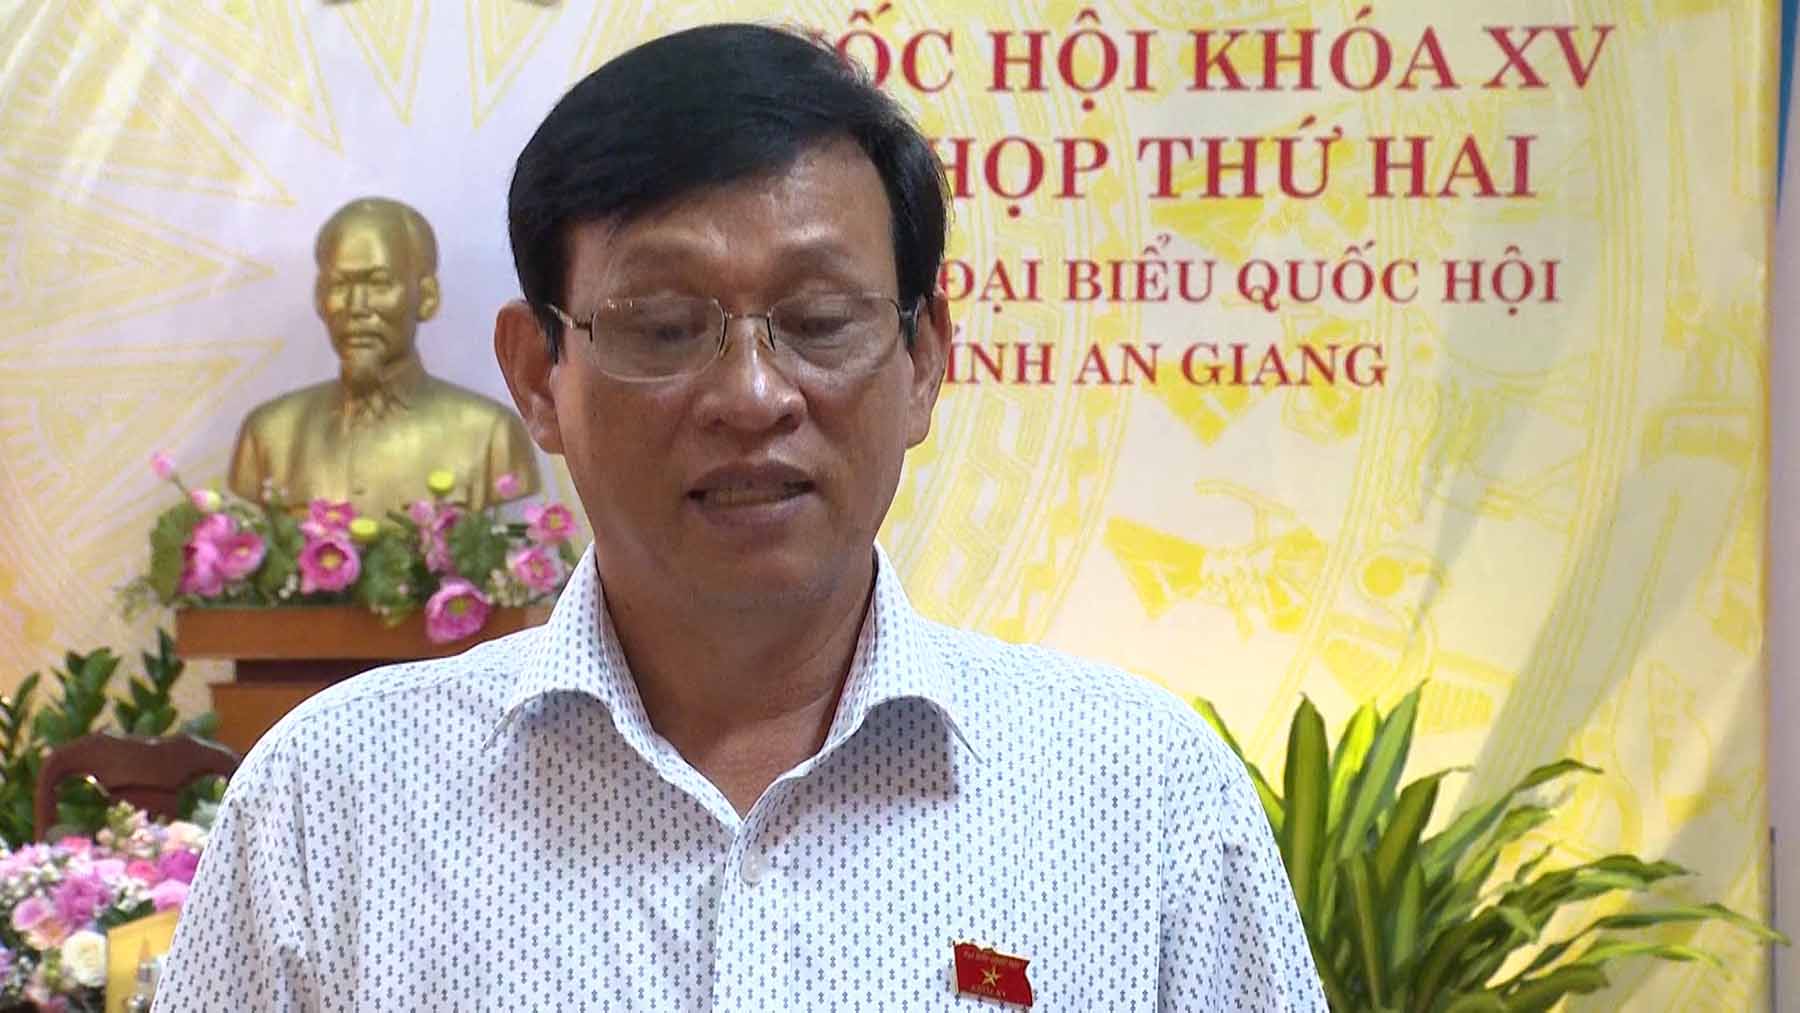 Ông Nguyễn Văn Thạnh khi còn làm đại biểu Quốc hội tỉnh An Giang. Ảnh: Quochoi.vn 